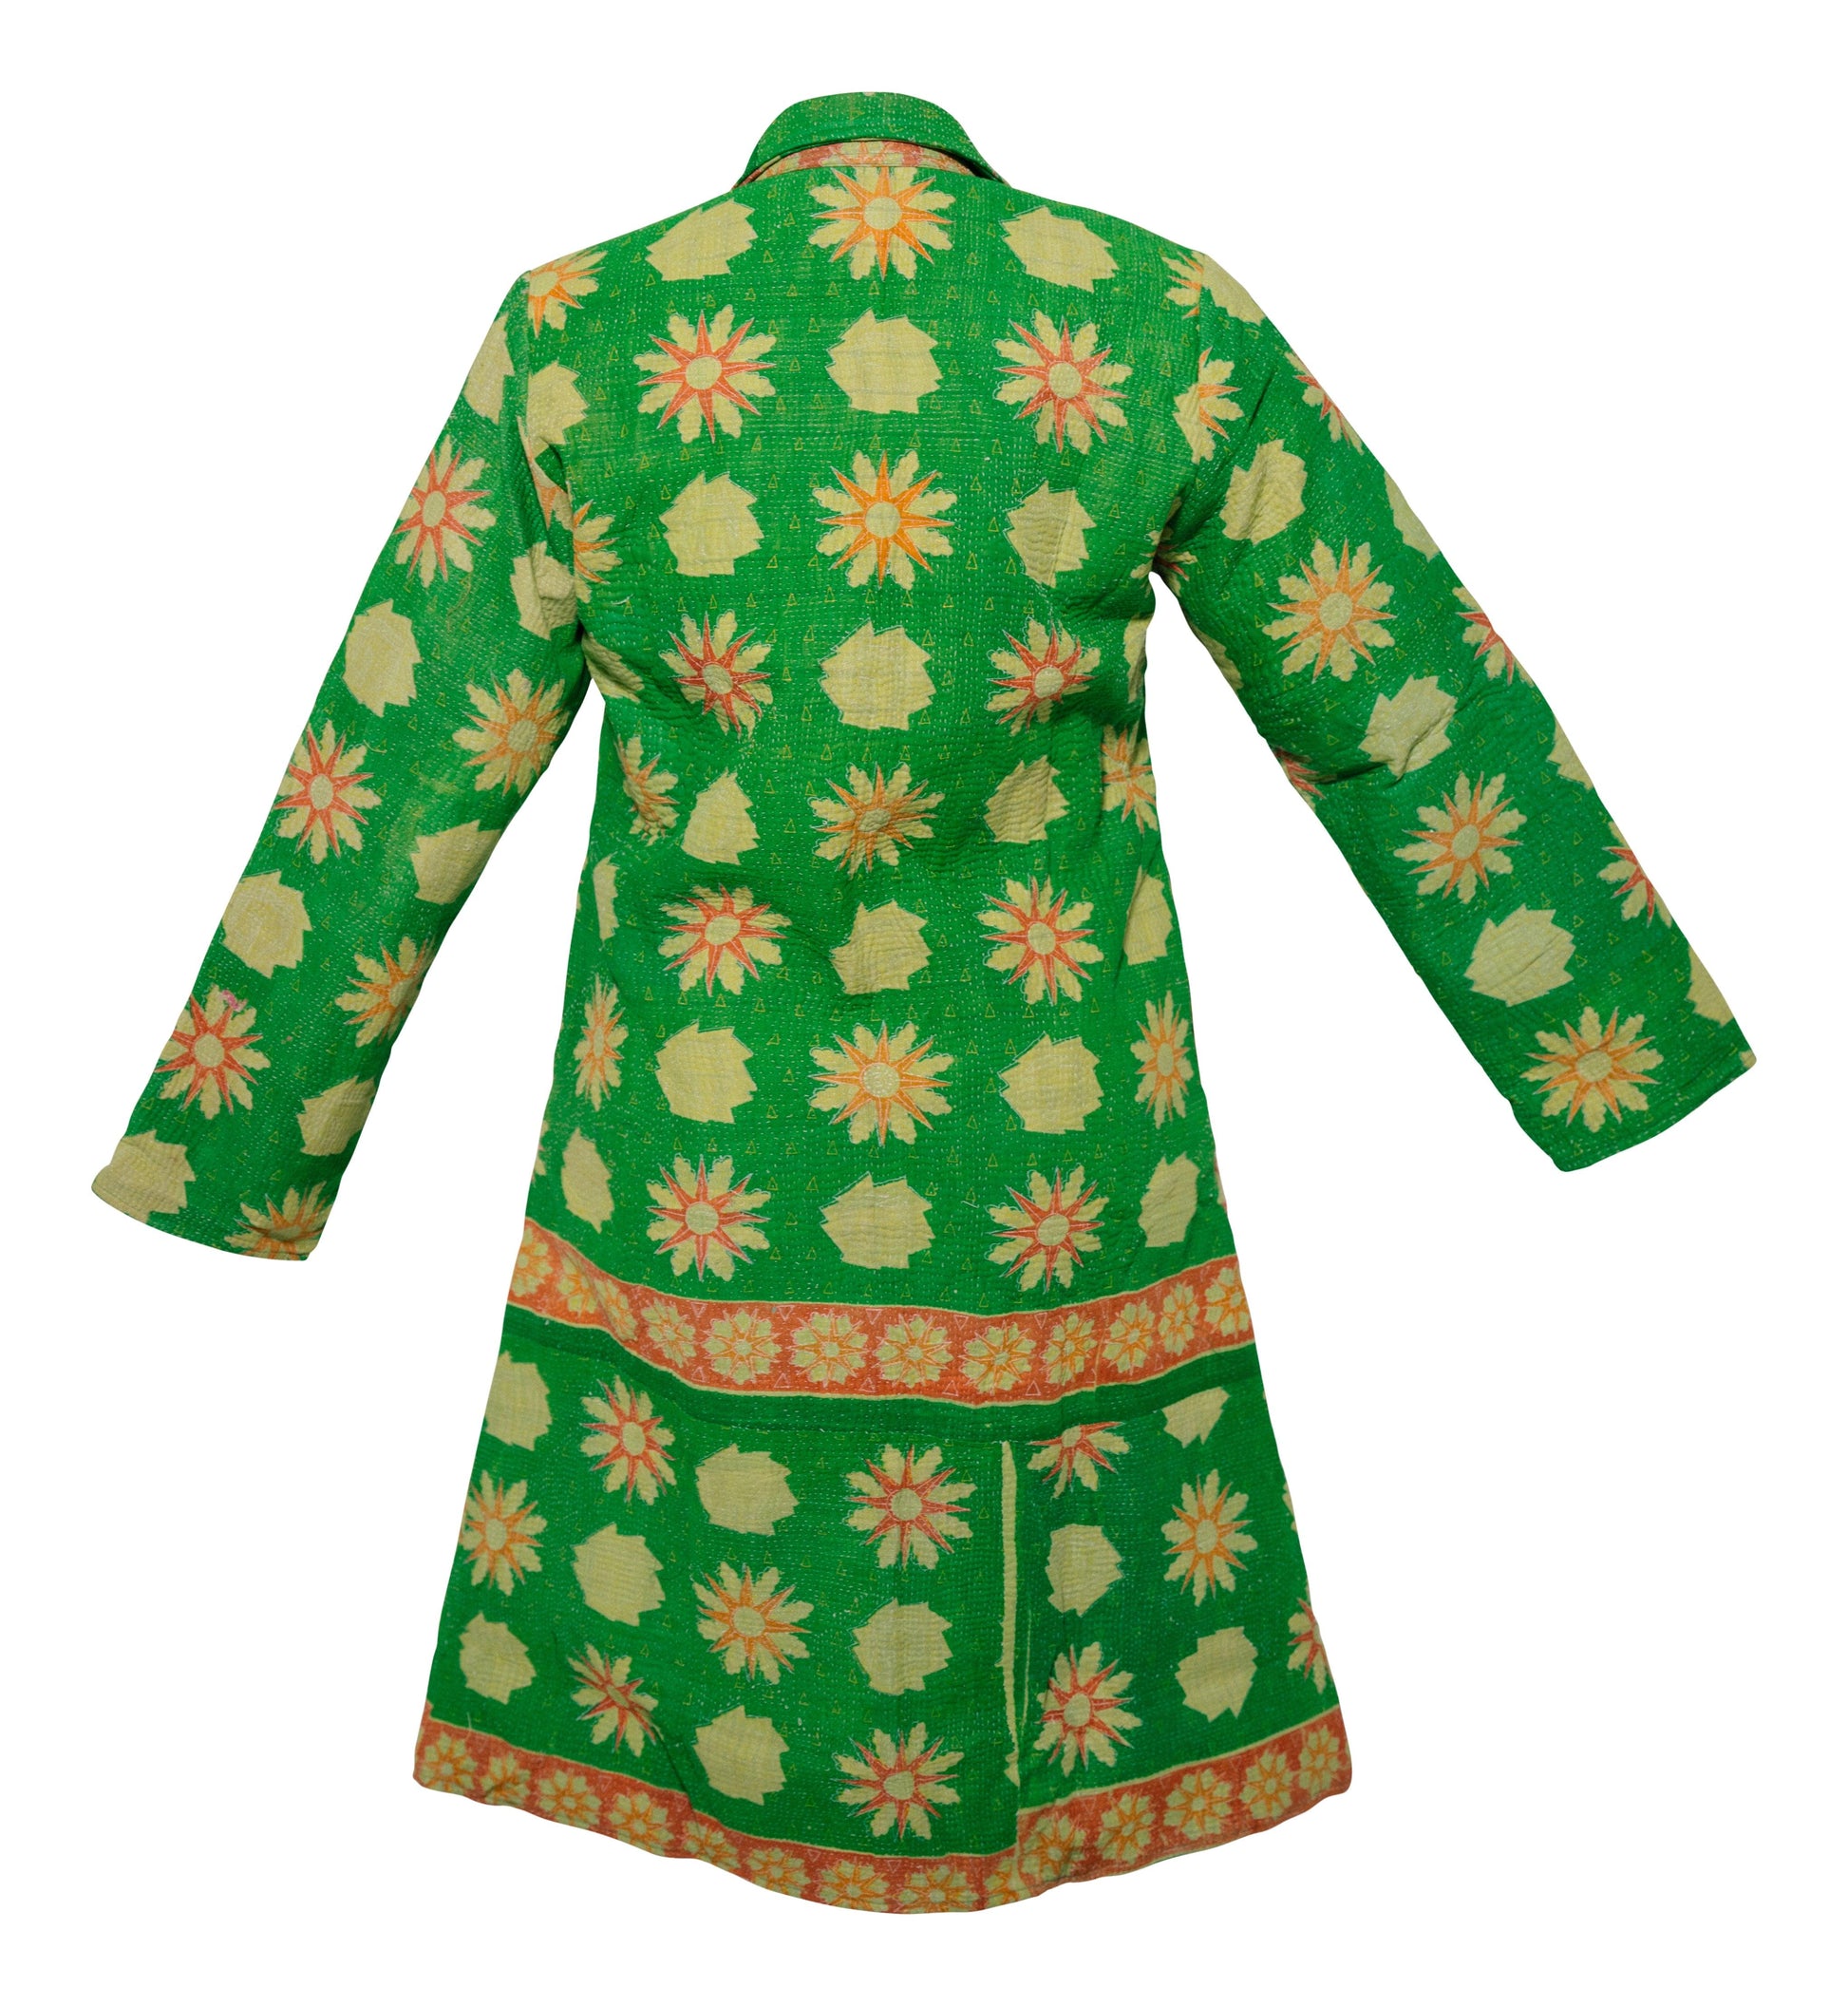 HIRA COAT - Upcycled Kantha Coat GREEN FLORAL - LARGE - Transcend